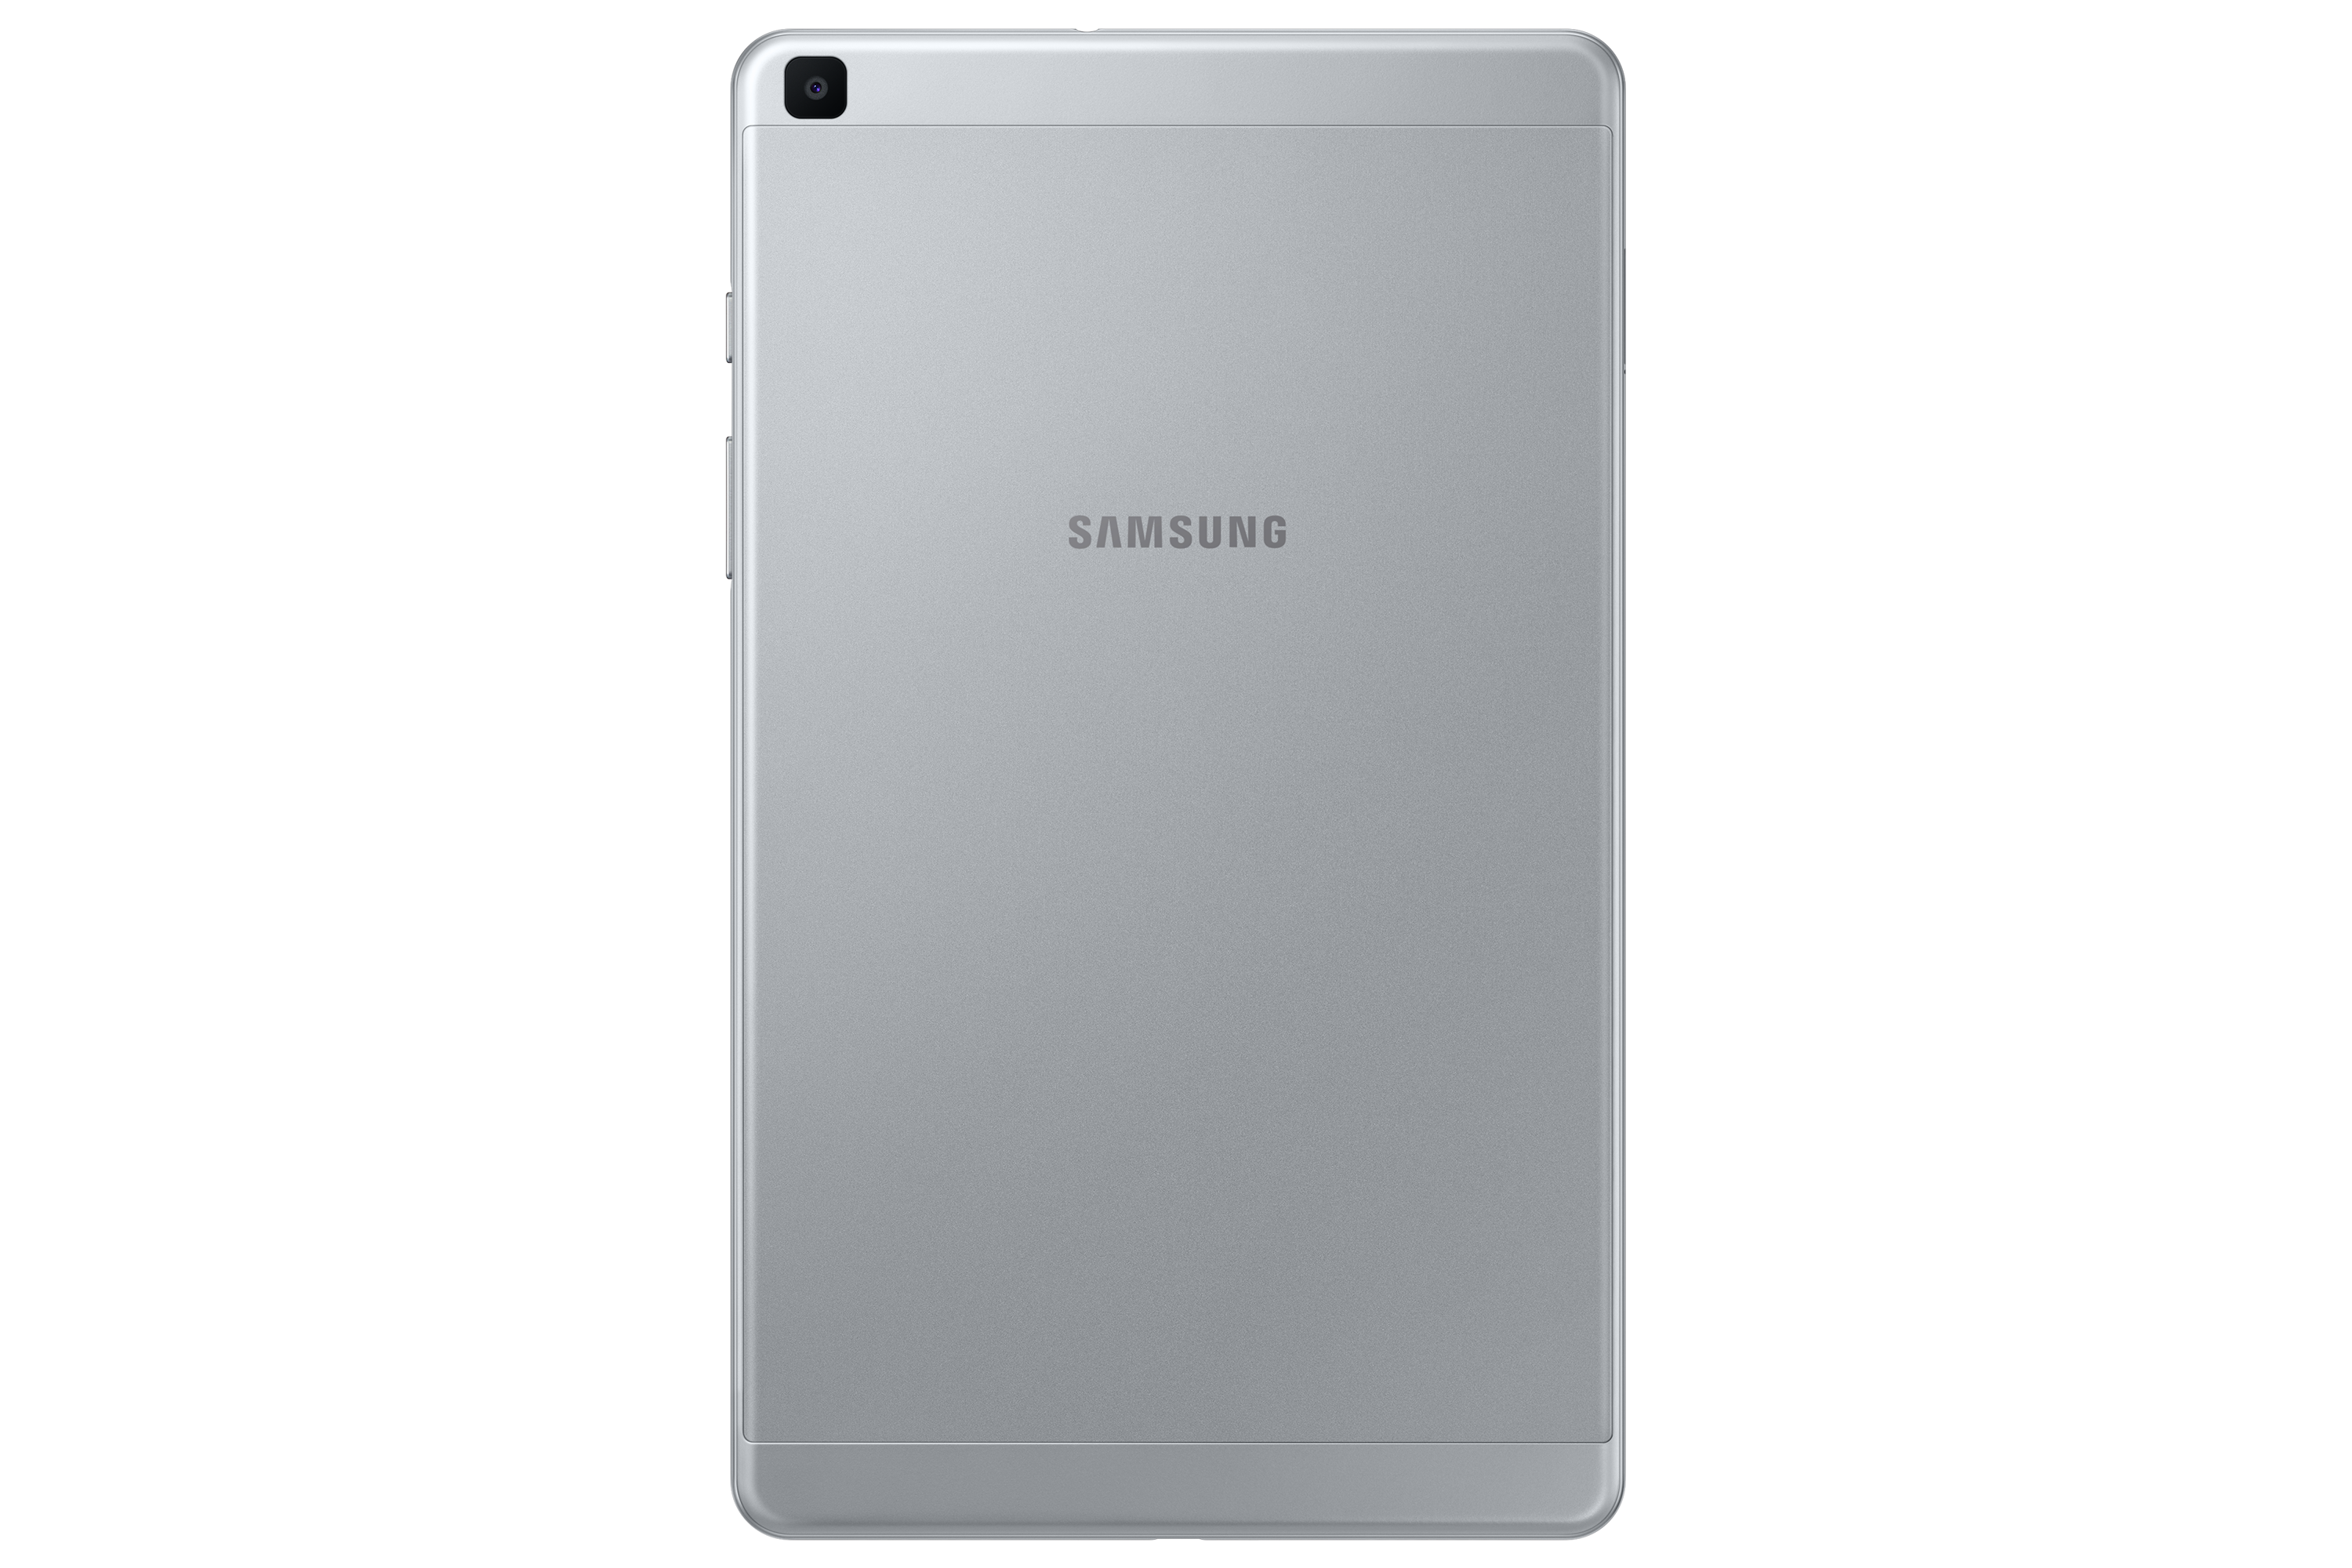 Samsung giới thiệu điện thoại bảng mới – Galaxy Tab A 8.0